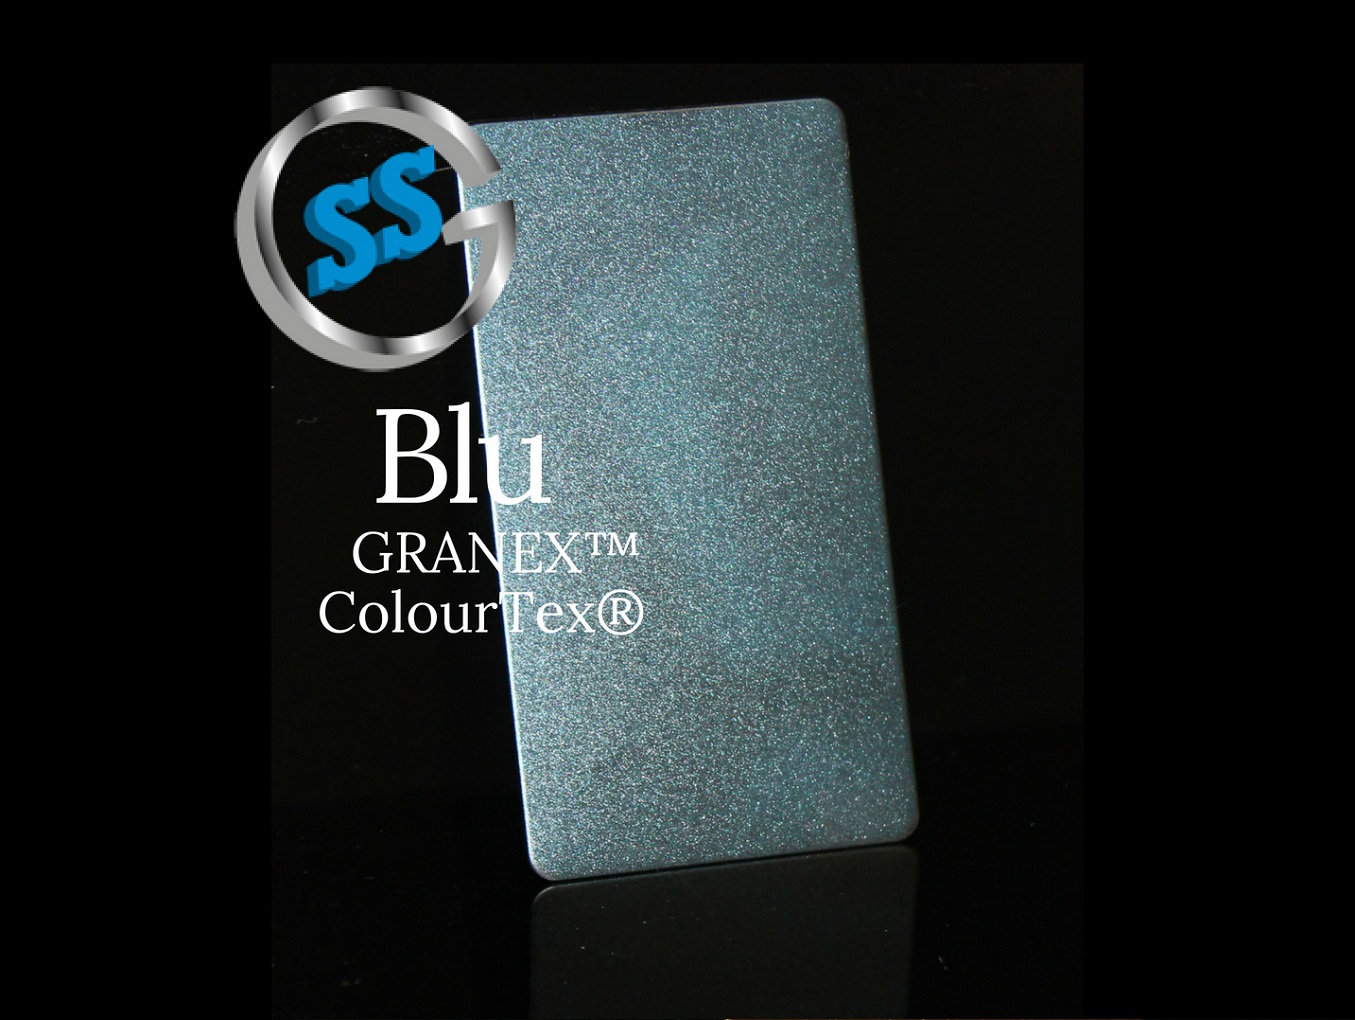 Inox elettro-colorato ColourTex Blue Granex, inox micropallinato colorato galvanico blu, inox blue Granex